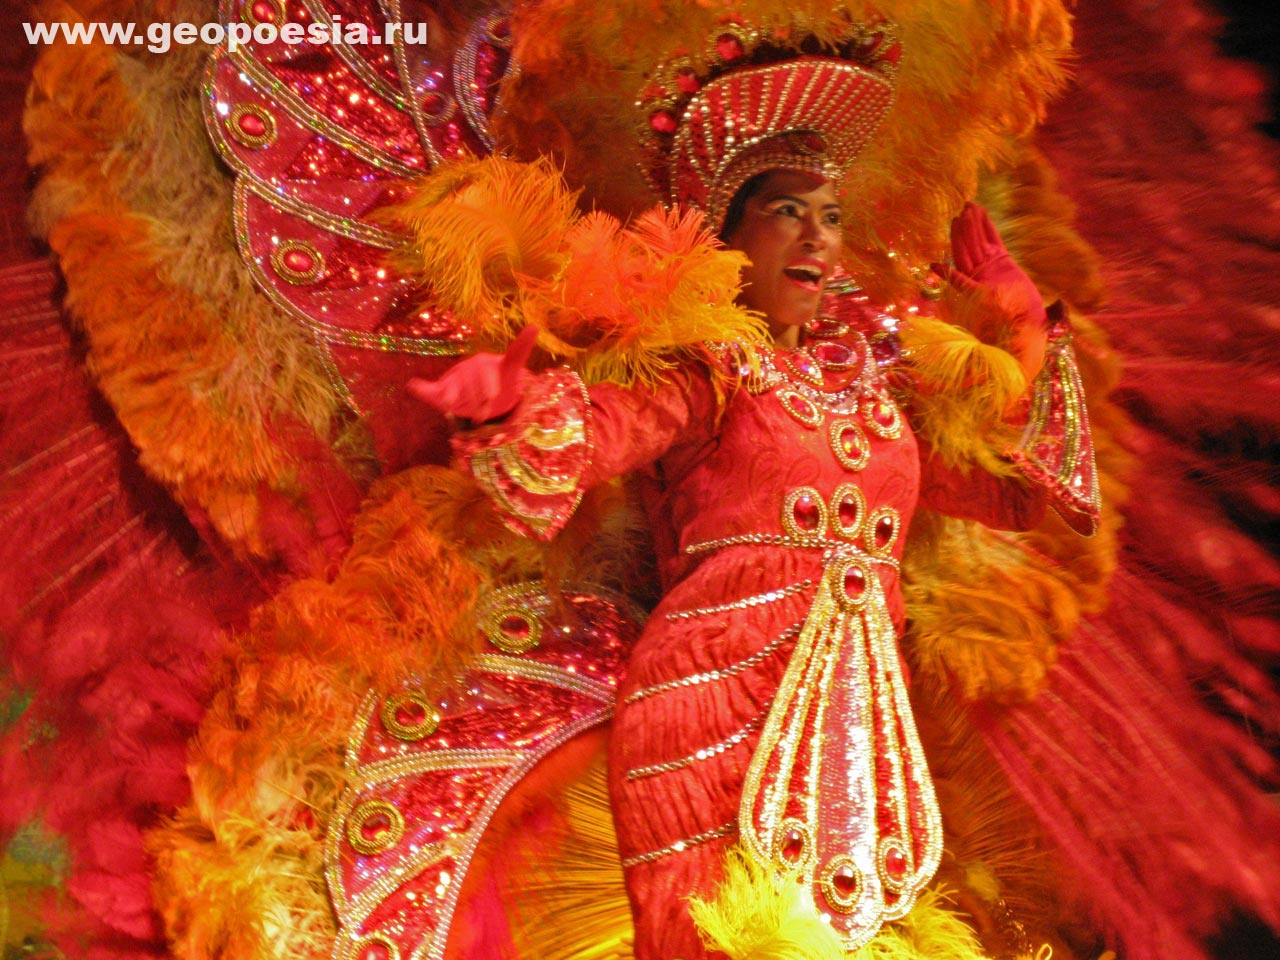 Национальный костюм Бразилии в городе Радости, Salvador de Bahia